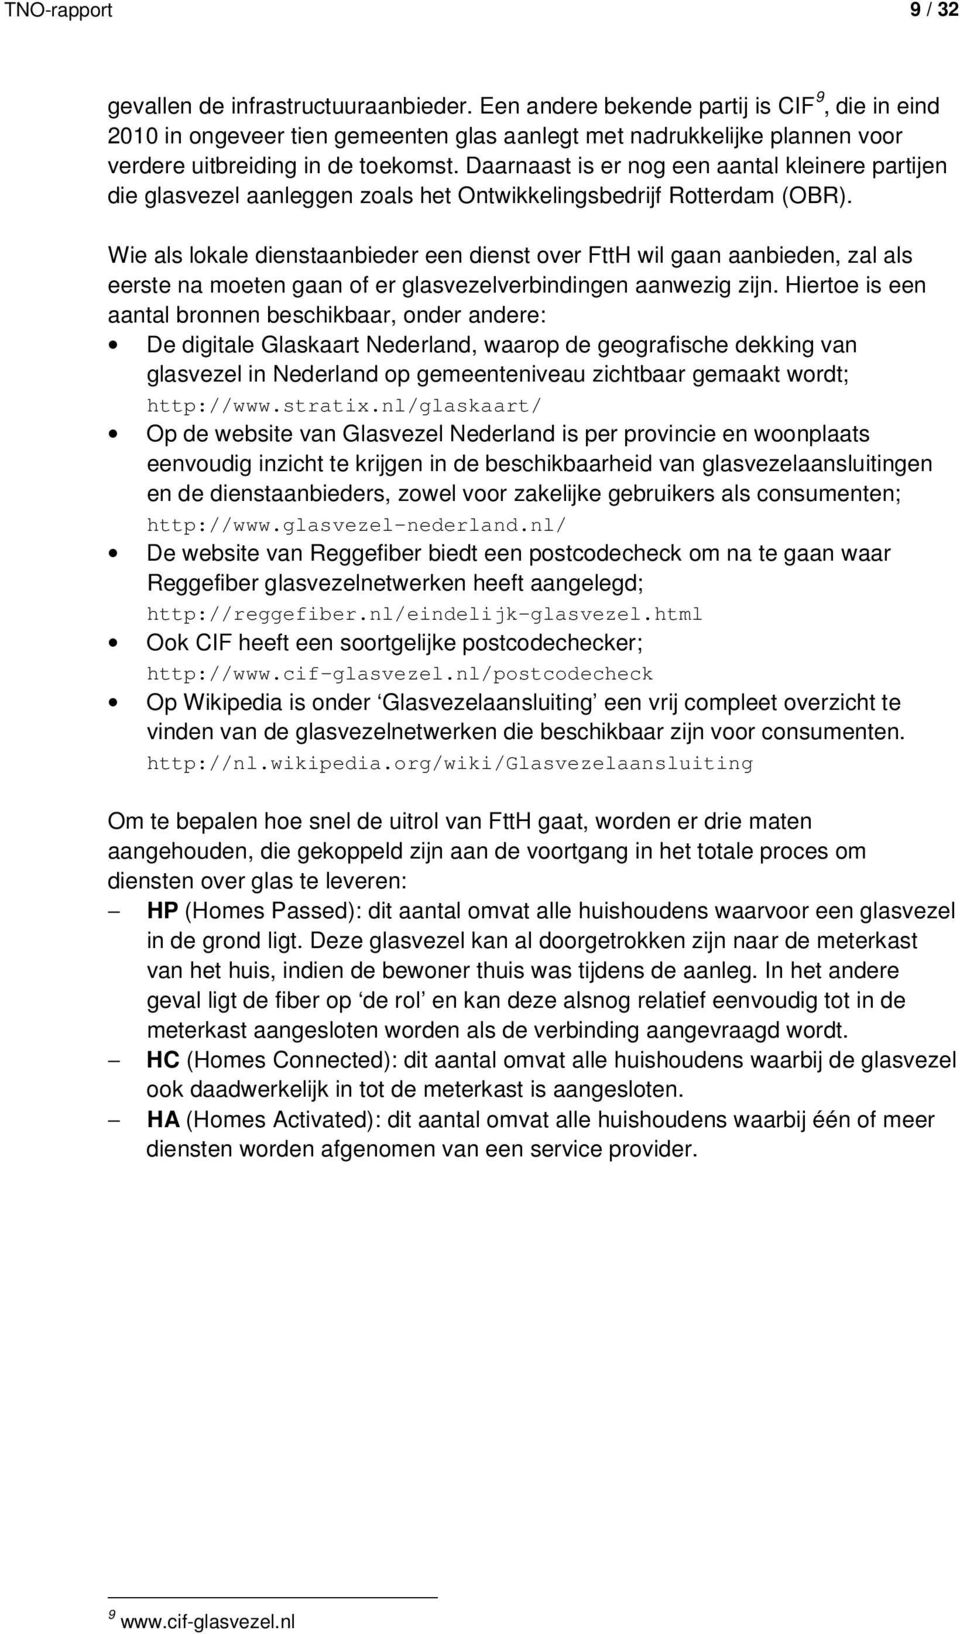 Daarnaast is er nog een aantal kleinere partijen die glasvezel aanleggen zoals het Ontwikkelingsbedrijf Rotterdam (OBR).